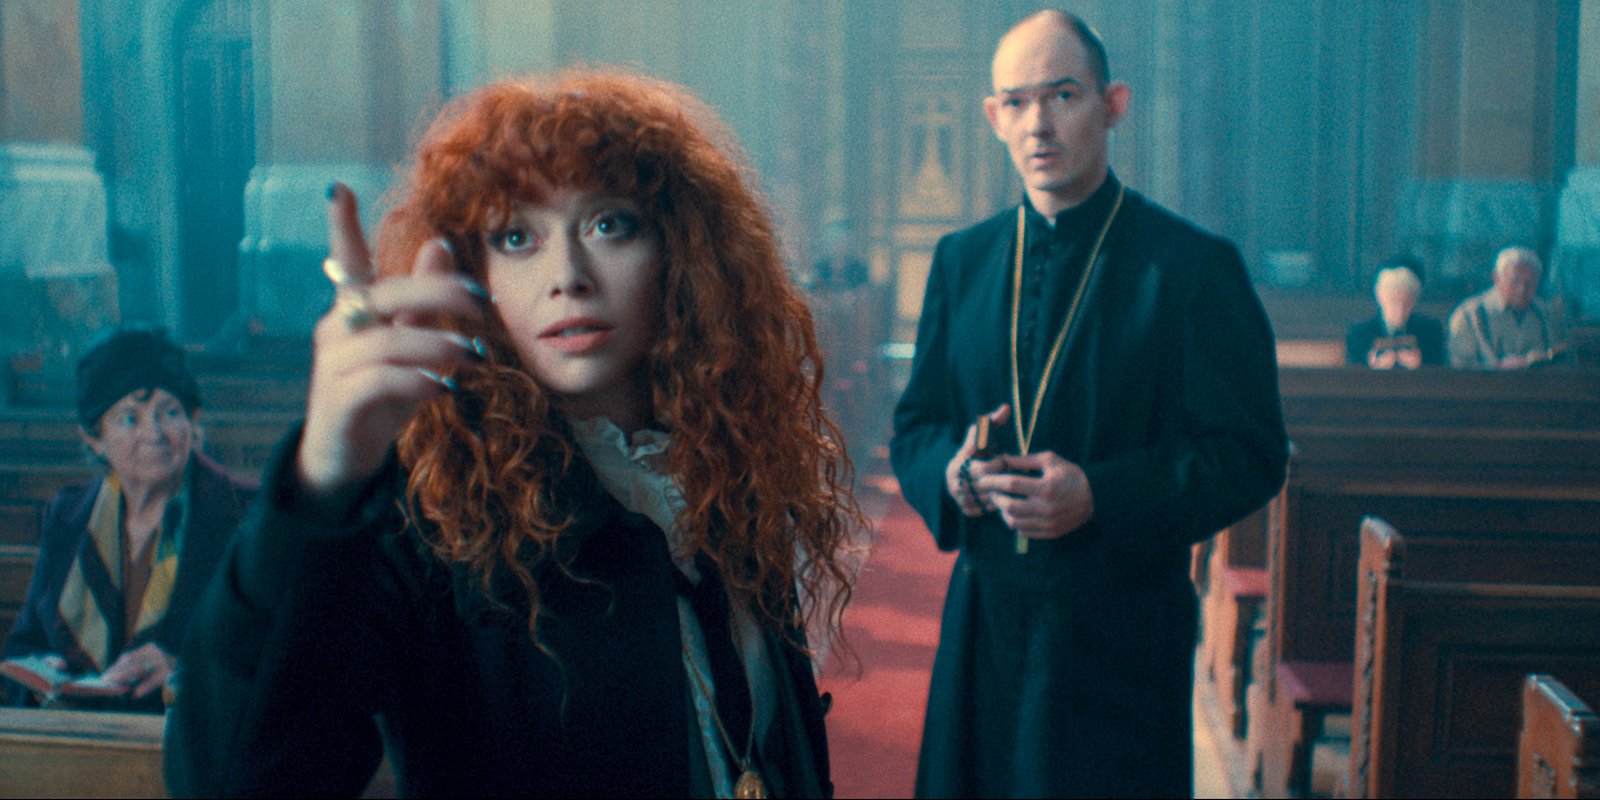 Natasha Lyonne as Nadia Vulvokov, Ákos Orosz as Father Laszlo in episode 205 of Russian Doll